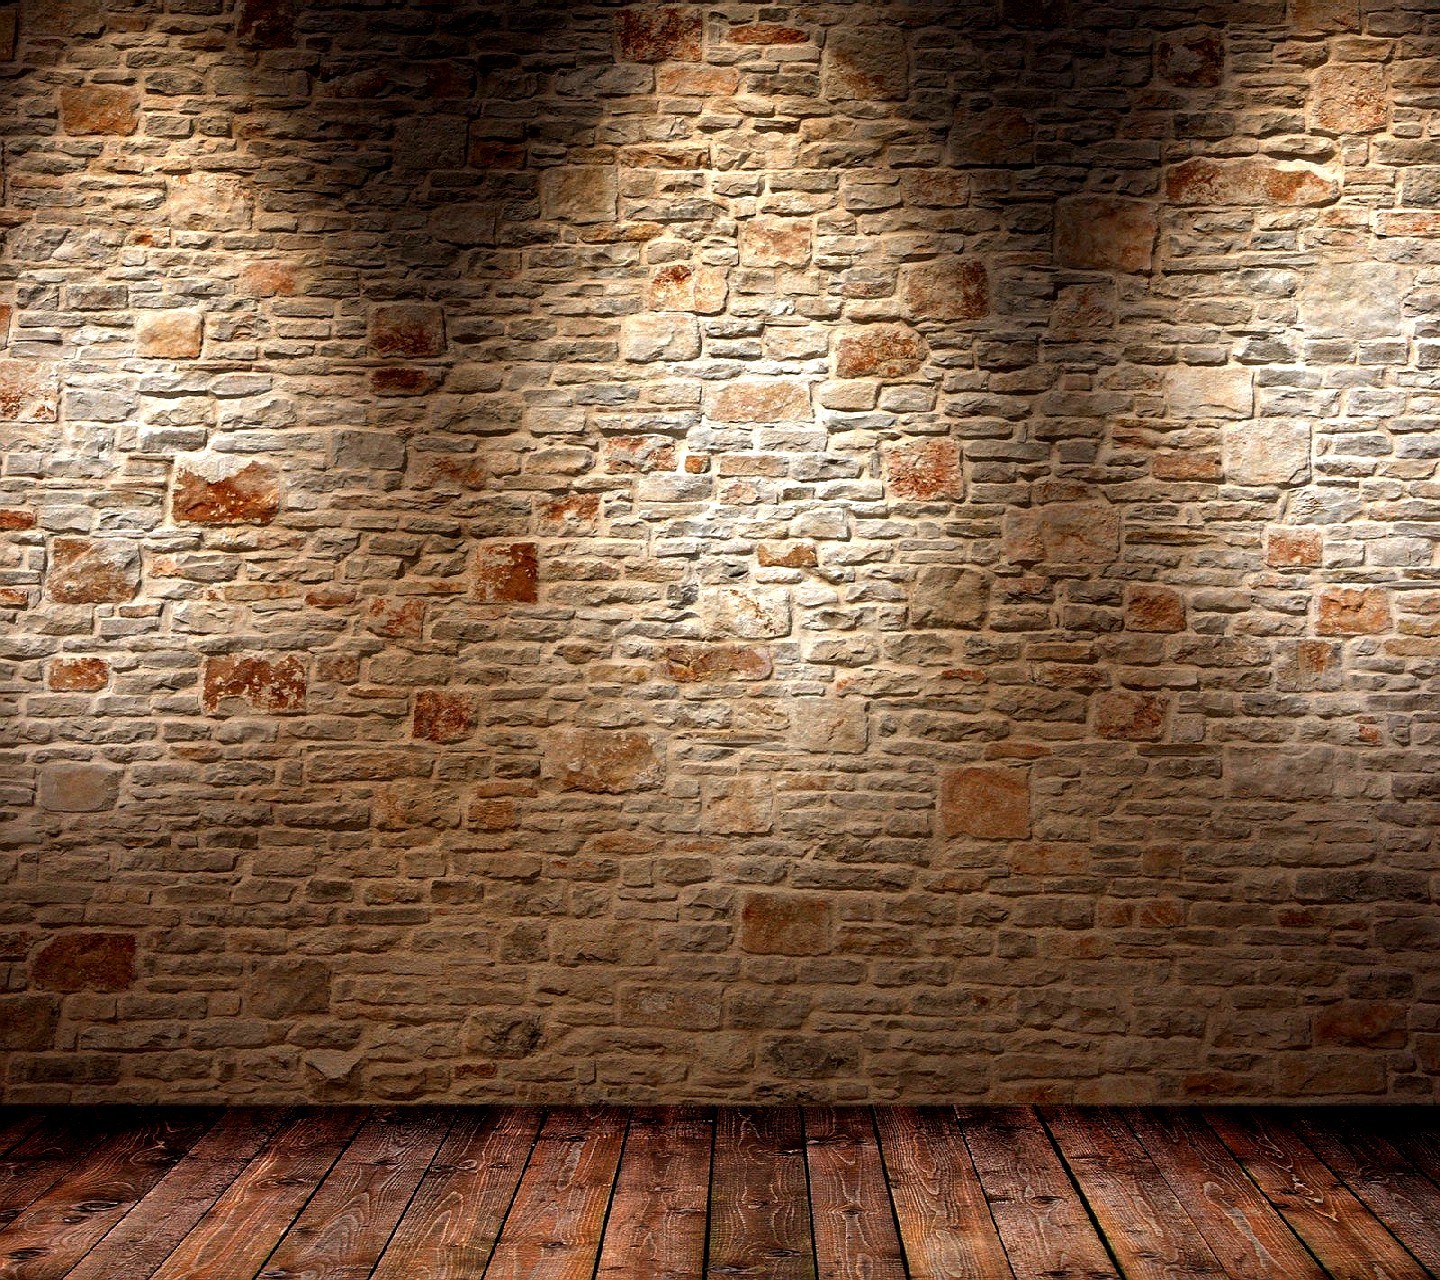 General 1440x1280 wall bricks texture